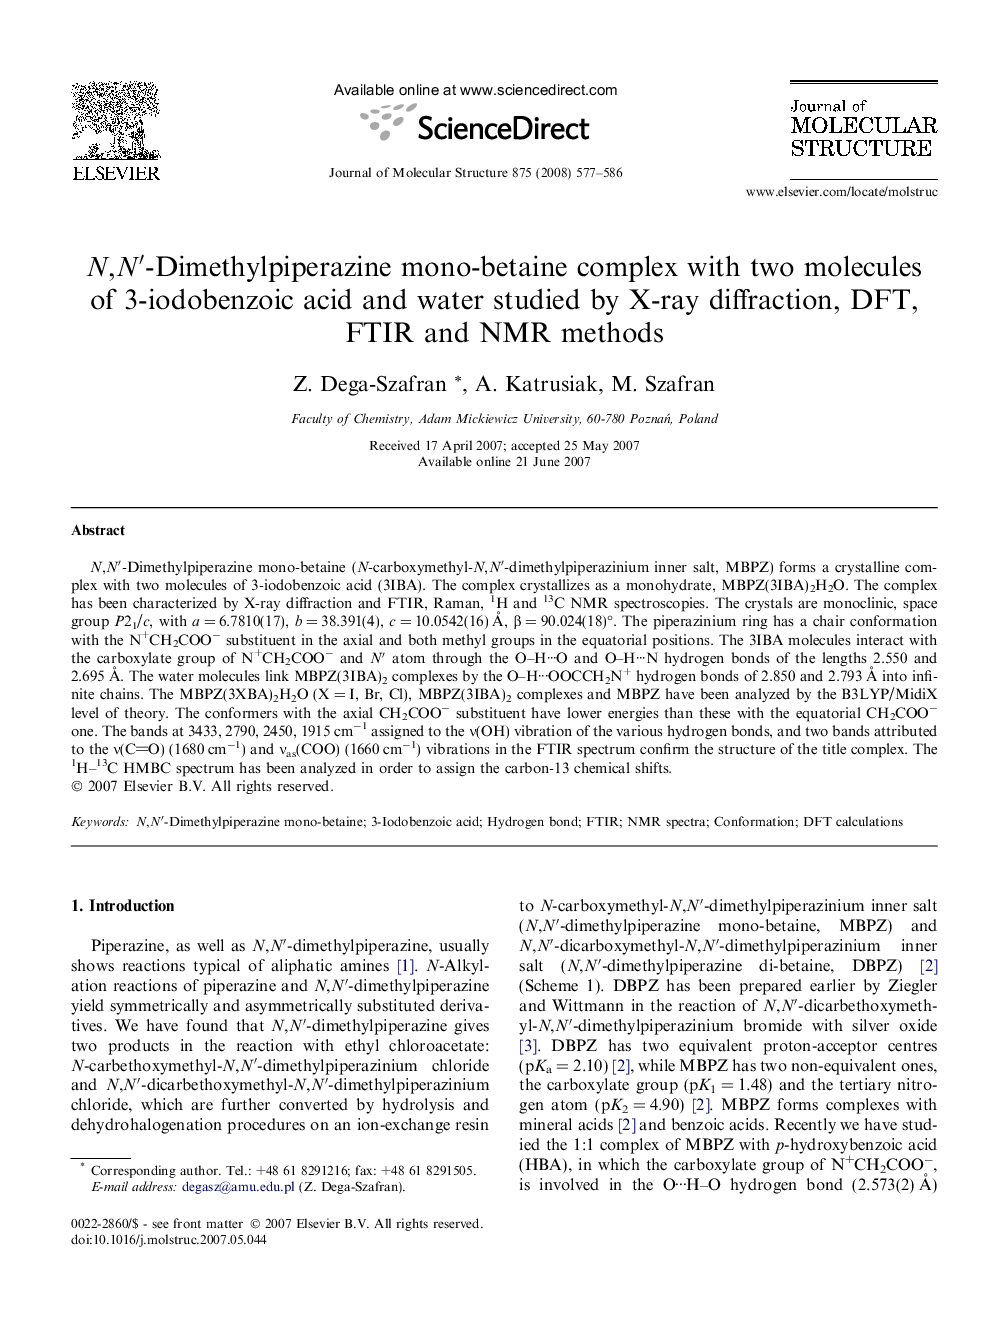 N,Nâ²-Dimethylpiperazine mono-betaine complex with two molecules of 3-iodobenzoic acid and water studied by X-ray diffraction, DFT, FTIR and NMR methods